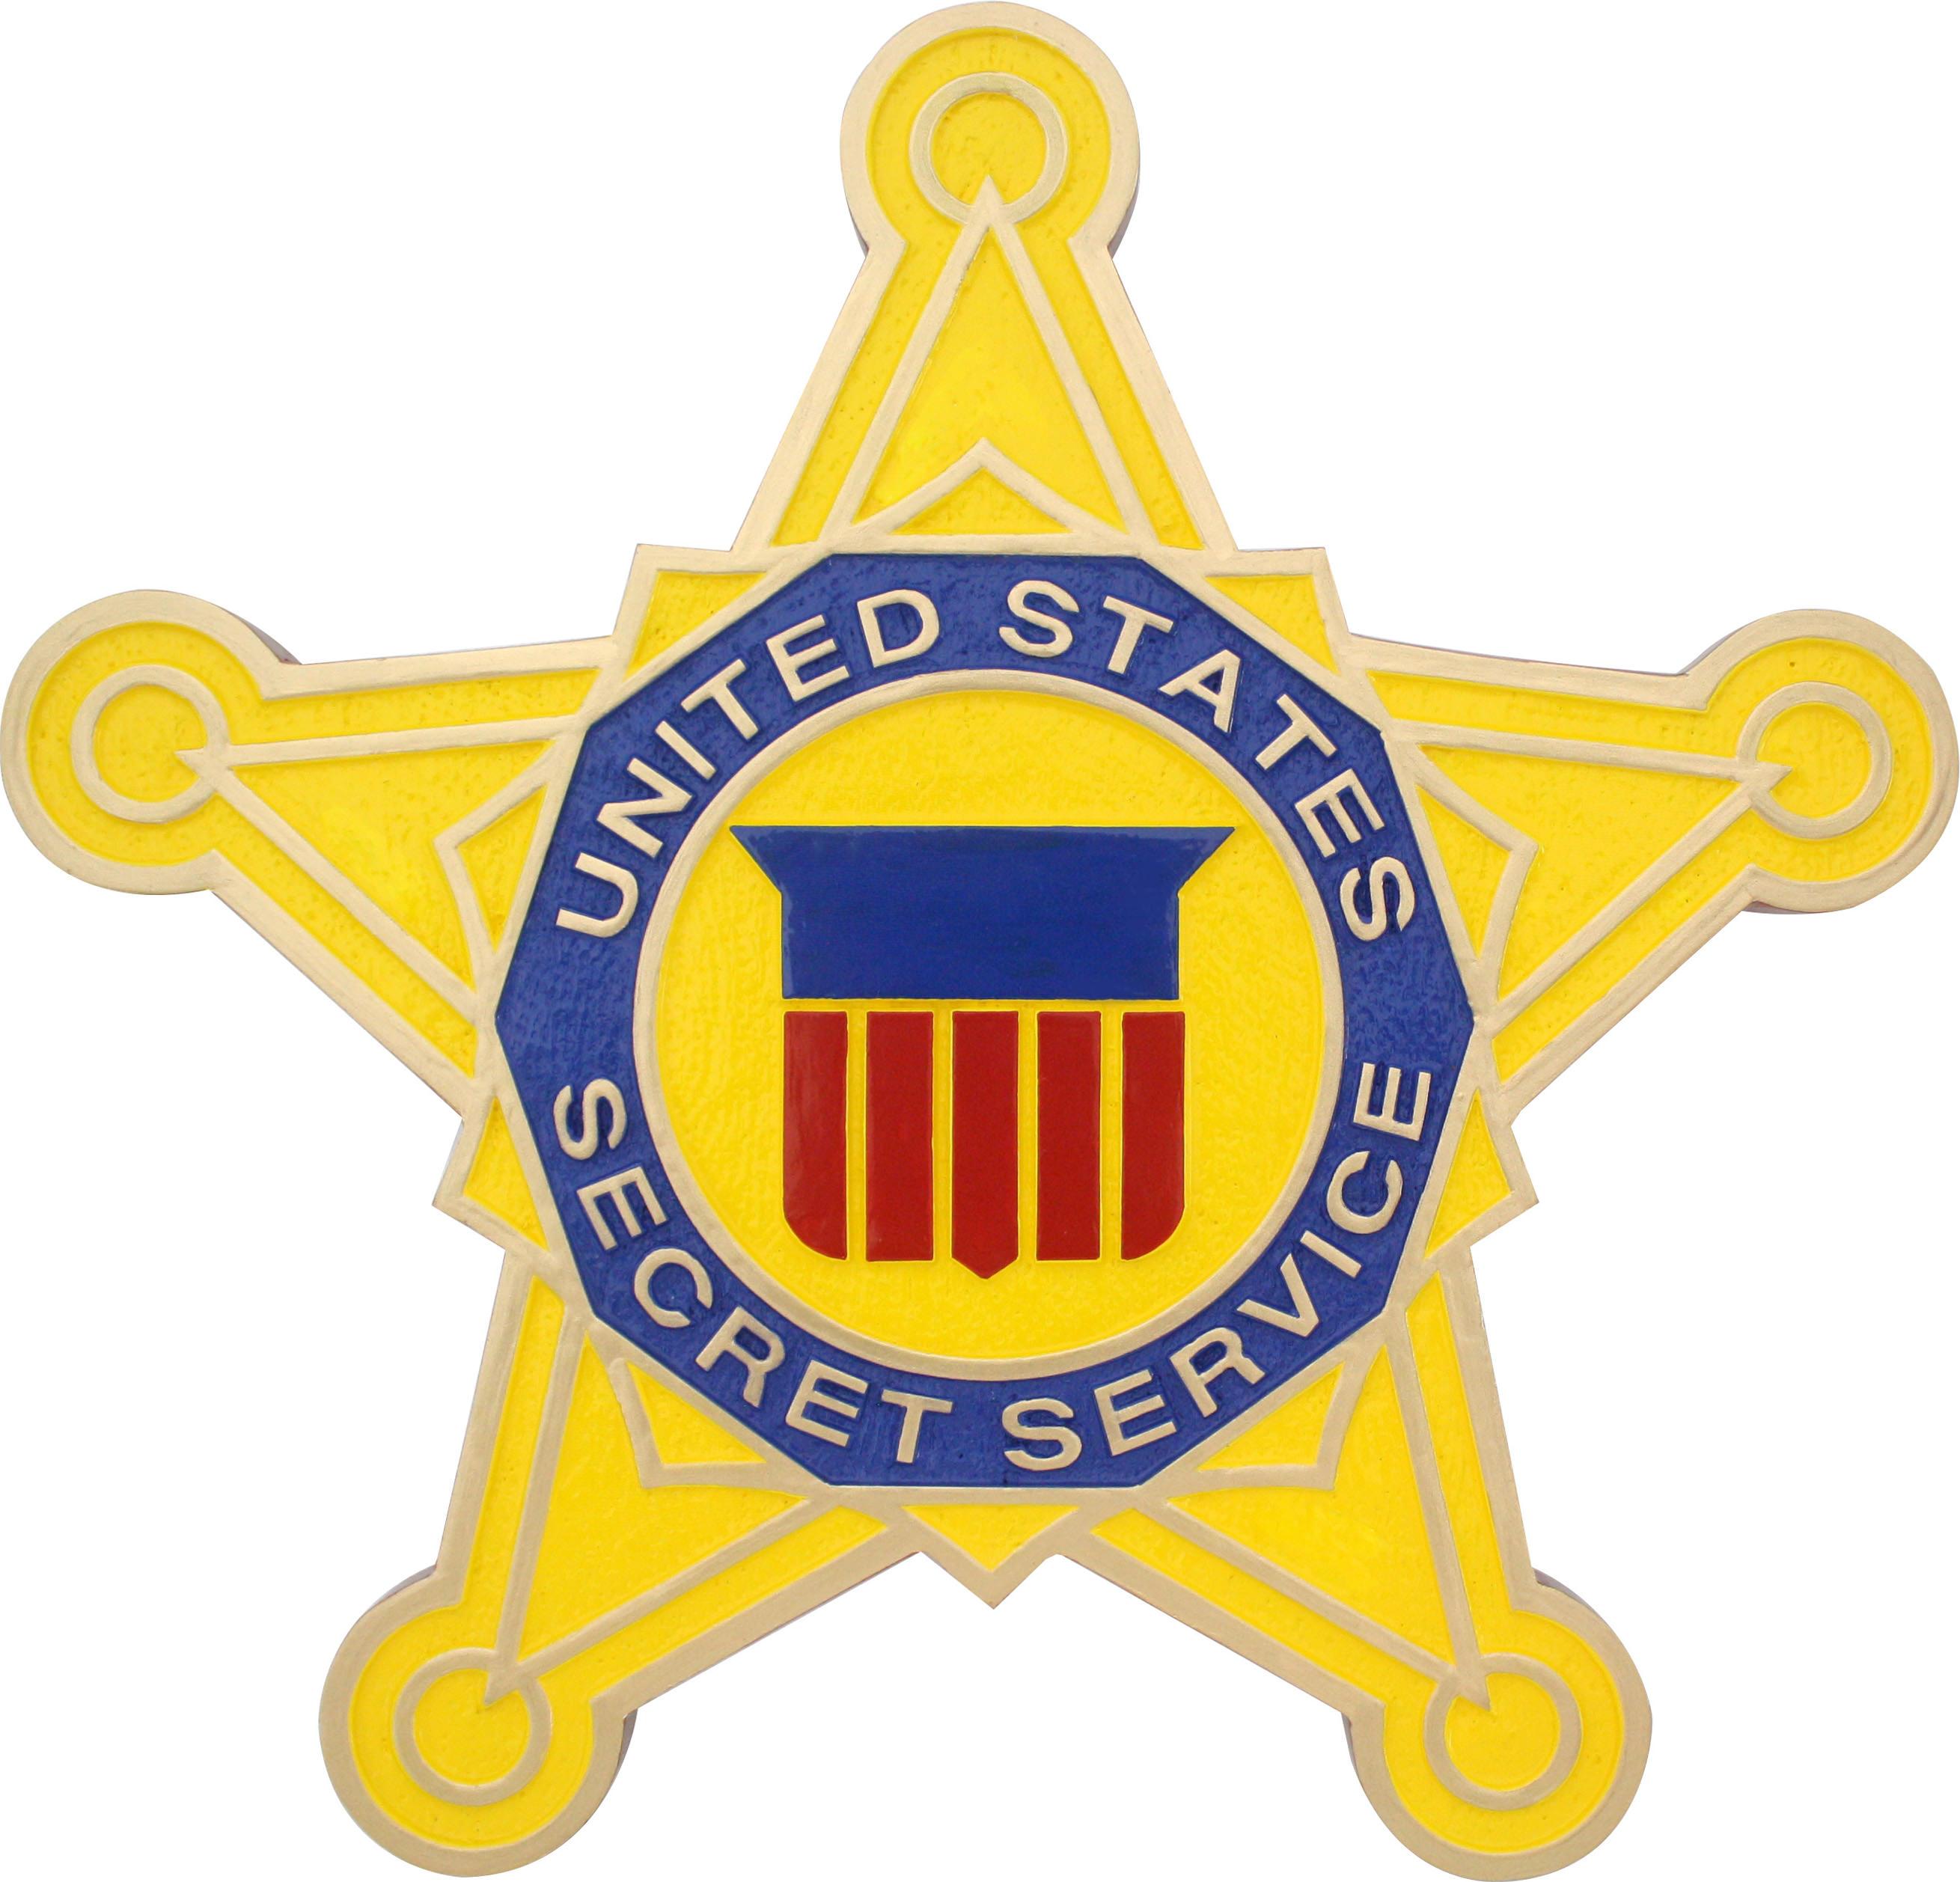 USSS Secret Service w DHS Emblem Marble Desk Plaque Accessory 5X3X.75 